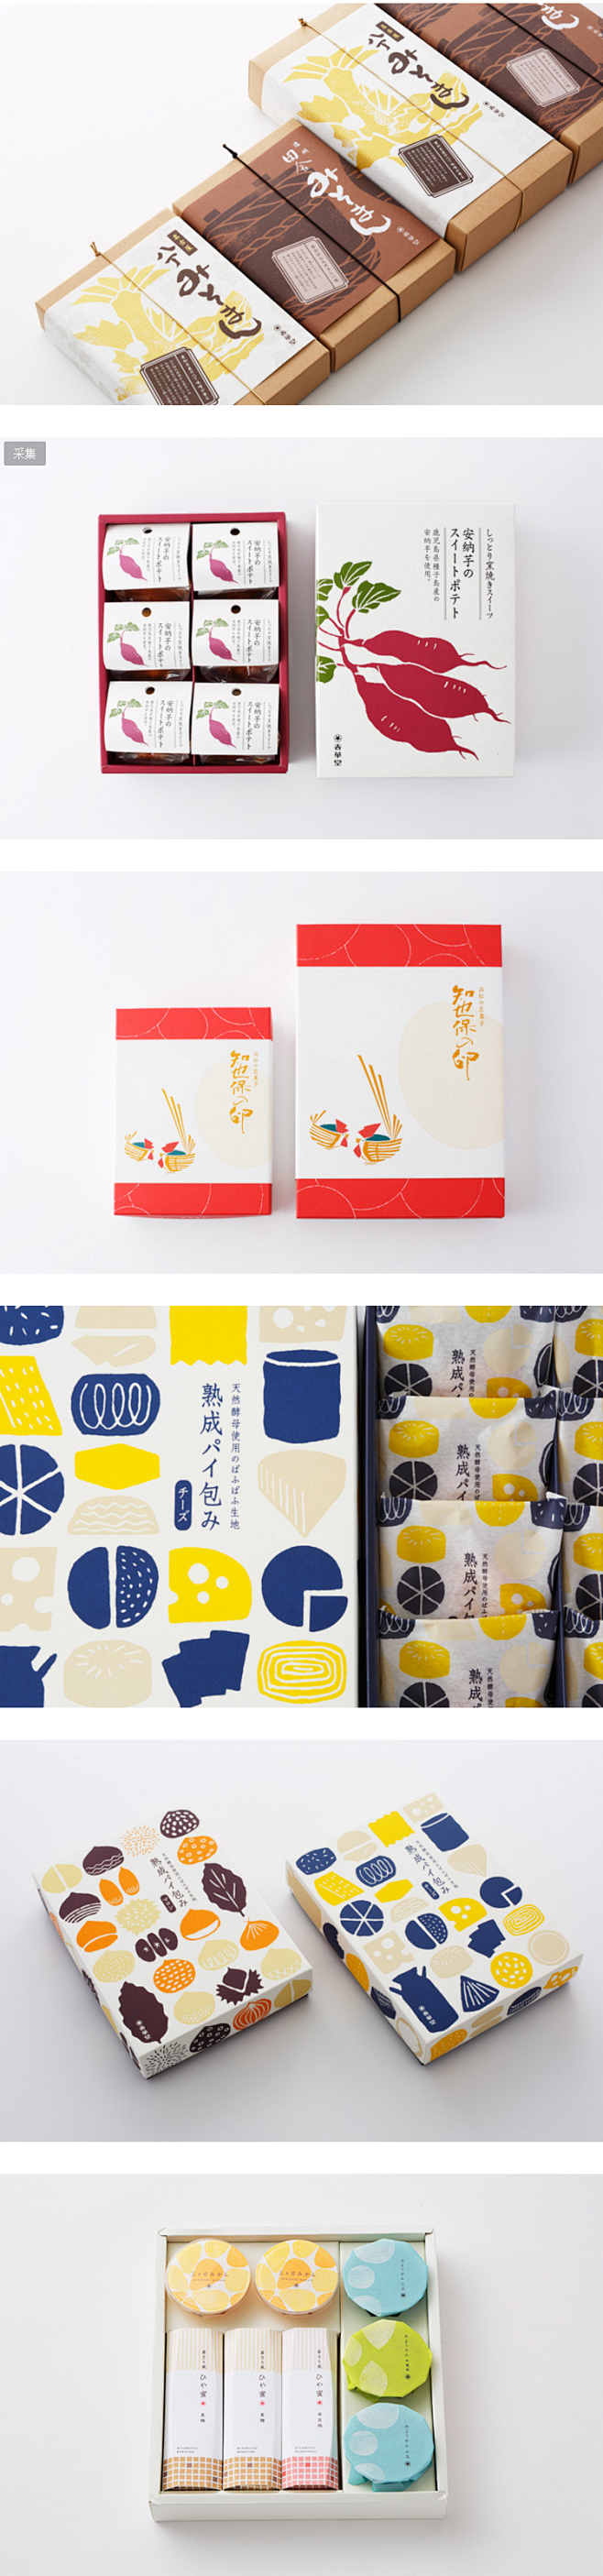 日本设计 | 颜值爆表的日系包装-古田路...